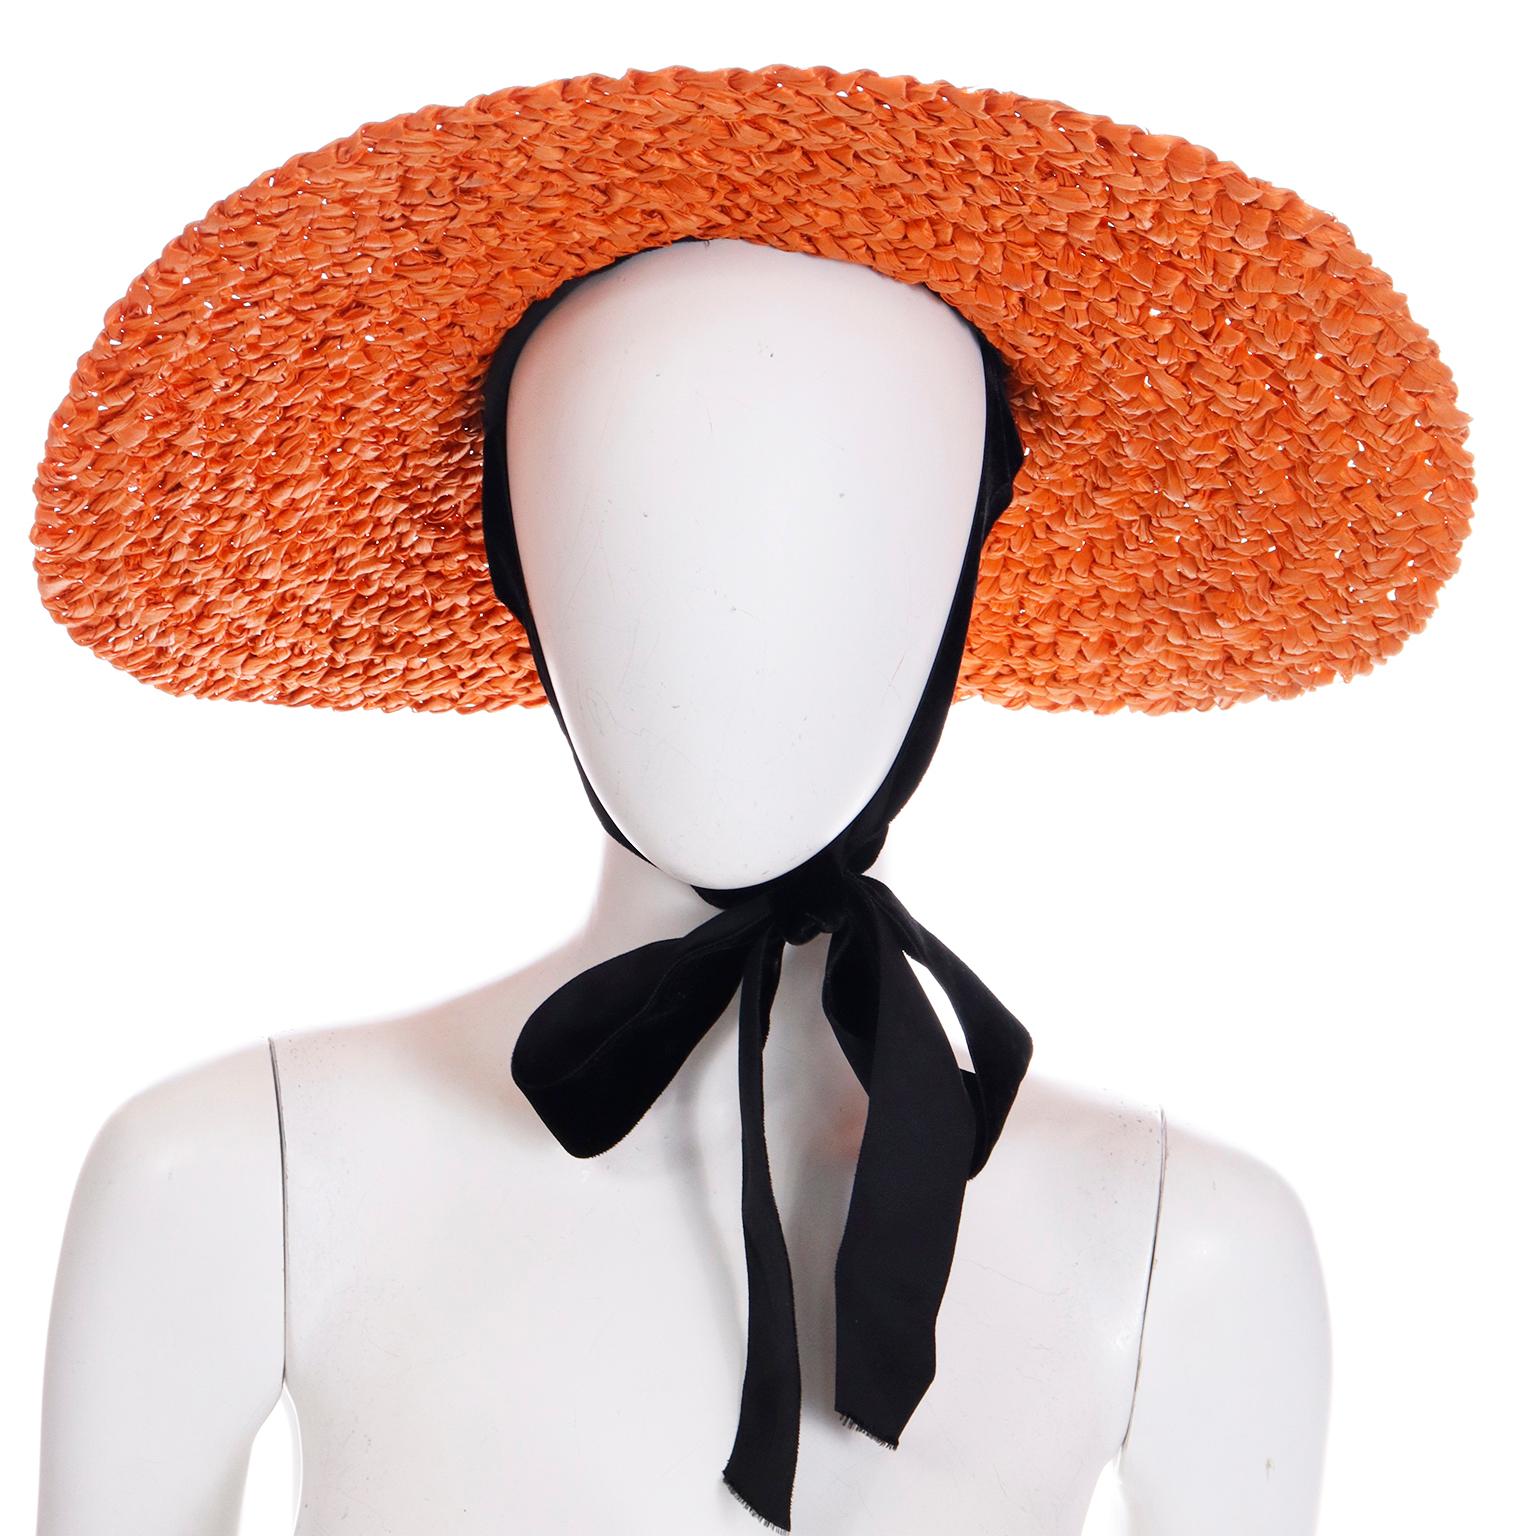 Il s'agit d'un chapeau de paille très spécial datant de la fin des années 1930 ou du début des années 1940. Il provient de Tailored Woman Fifth Ave at Fifty Seventh Street New York. Ce fabuleux chapeau de paille tressée orange à large bord est orné